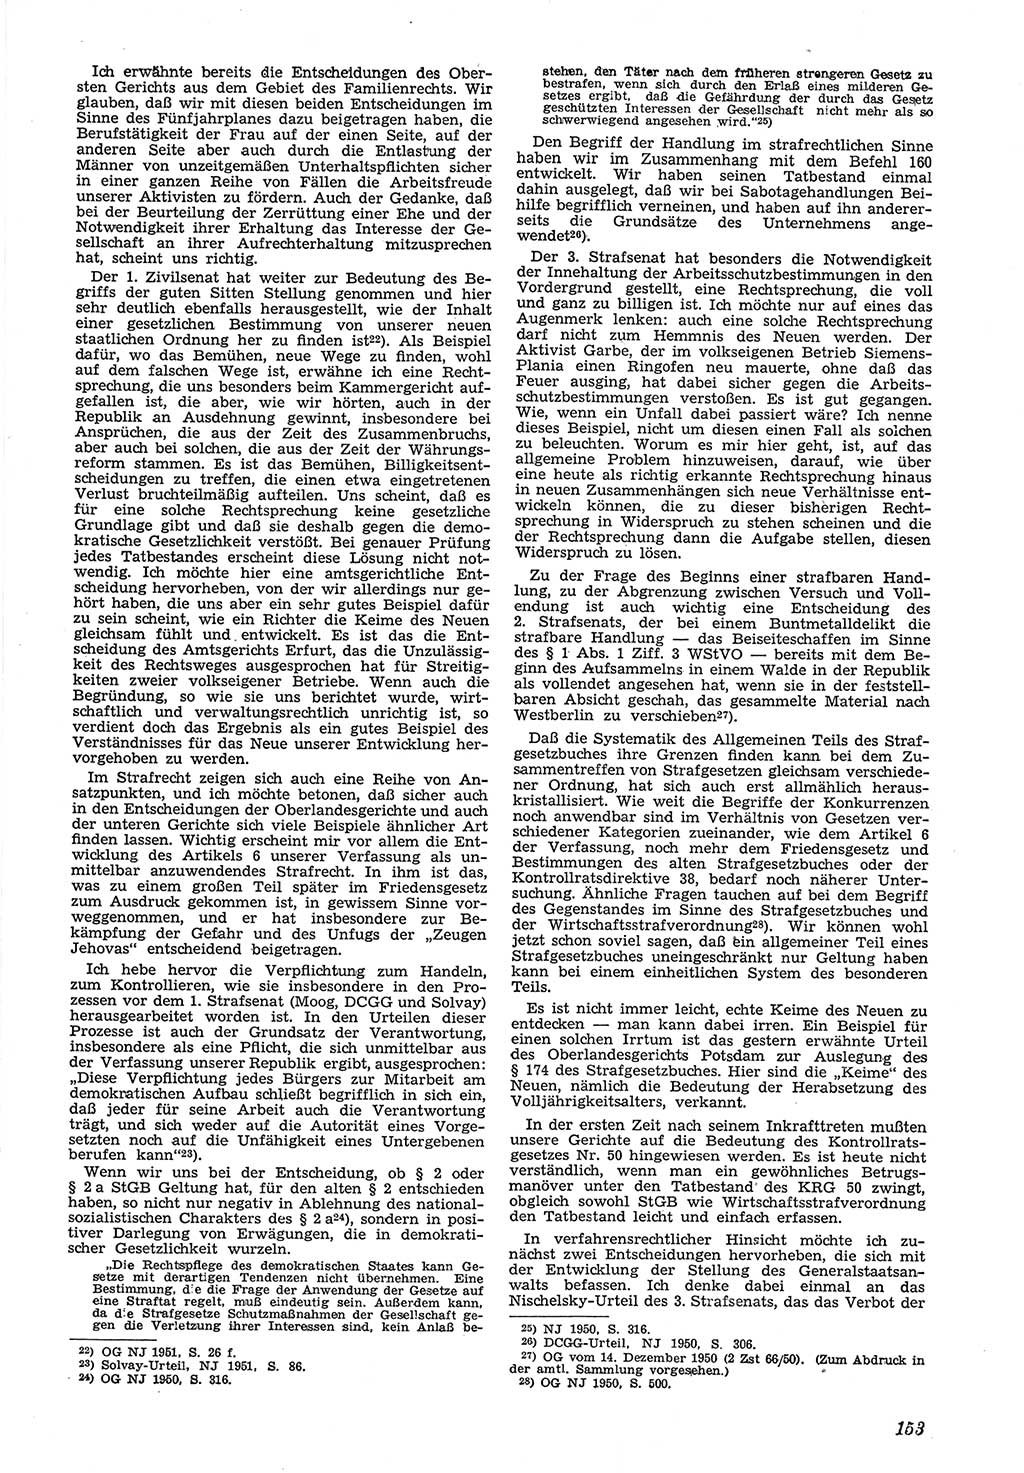 Neue Justiz (NJ), Zeitschrift für Recht und Rechtswissenschaft [Deutsche Demokratische Republik (DDR)], 5. Jahrgang 1951, Seite 153 (NJ DDR 1951, S. 153)